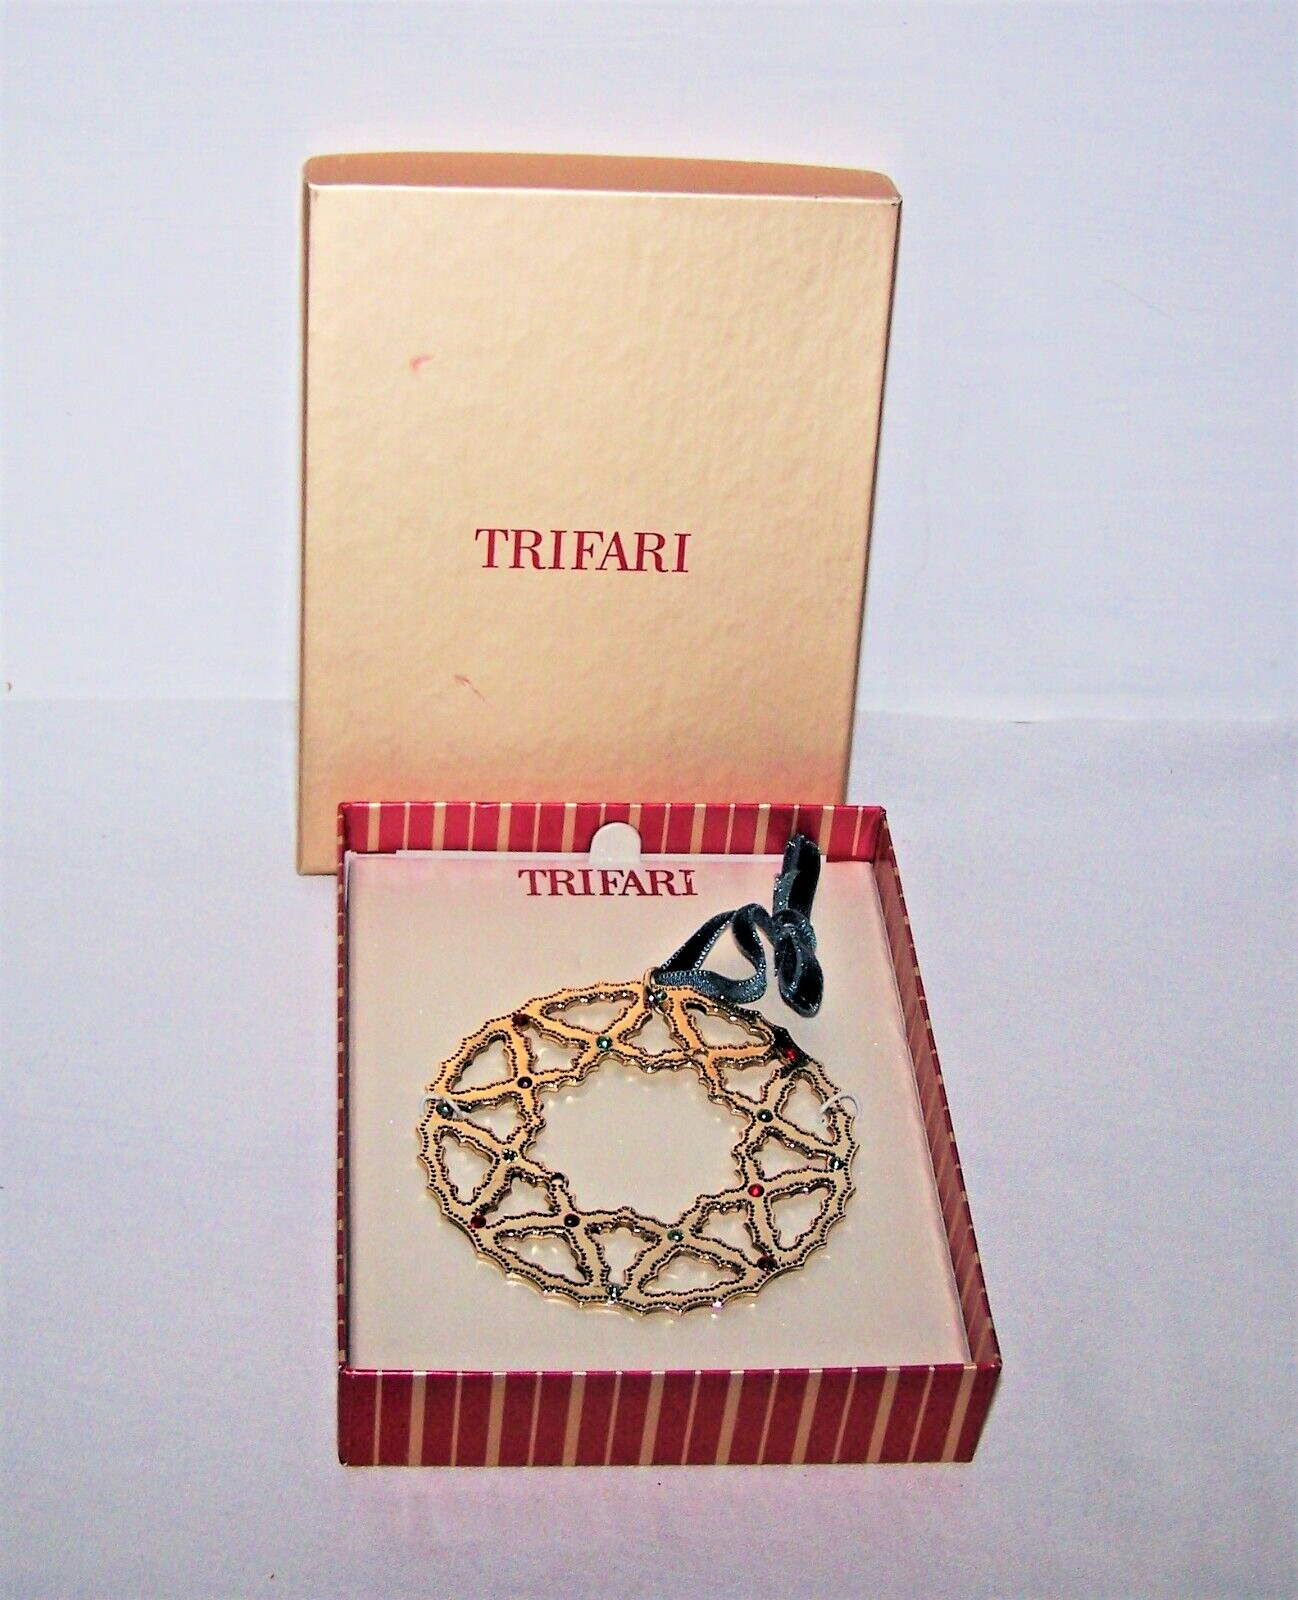 Trifari Snowflake Ornament in Original Box 3 Inches Wide